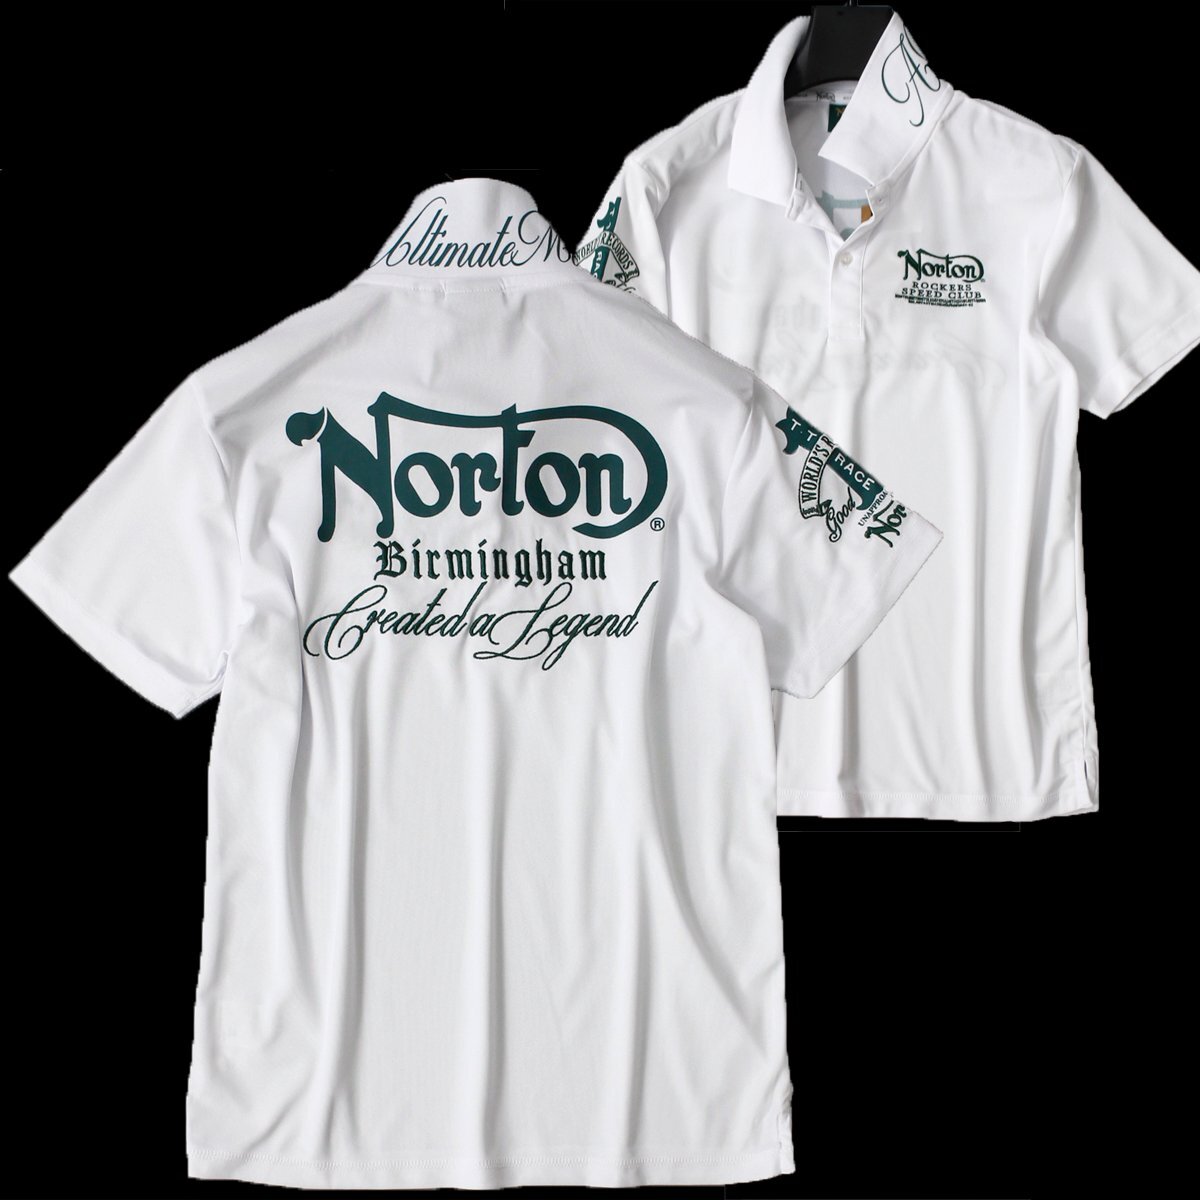  новый товар Norton Norton Golf олень. . рубашка-поло с коротким рукавом XL весна лето GOLF рубашка . вода скорость .UV cut Logo вышивка мужской одежда есть перевод *CG2302B